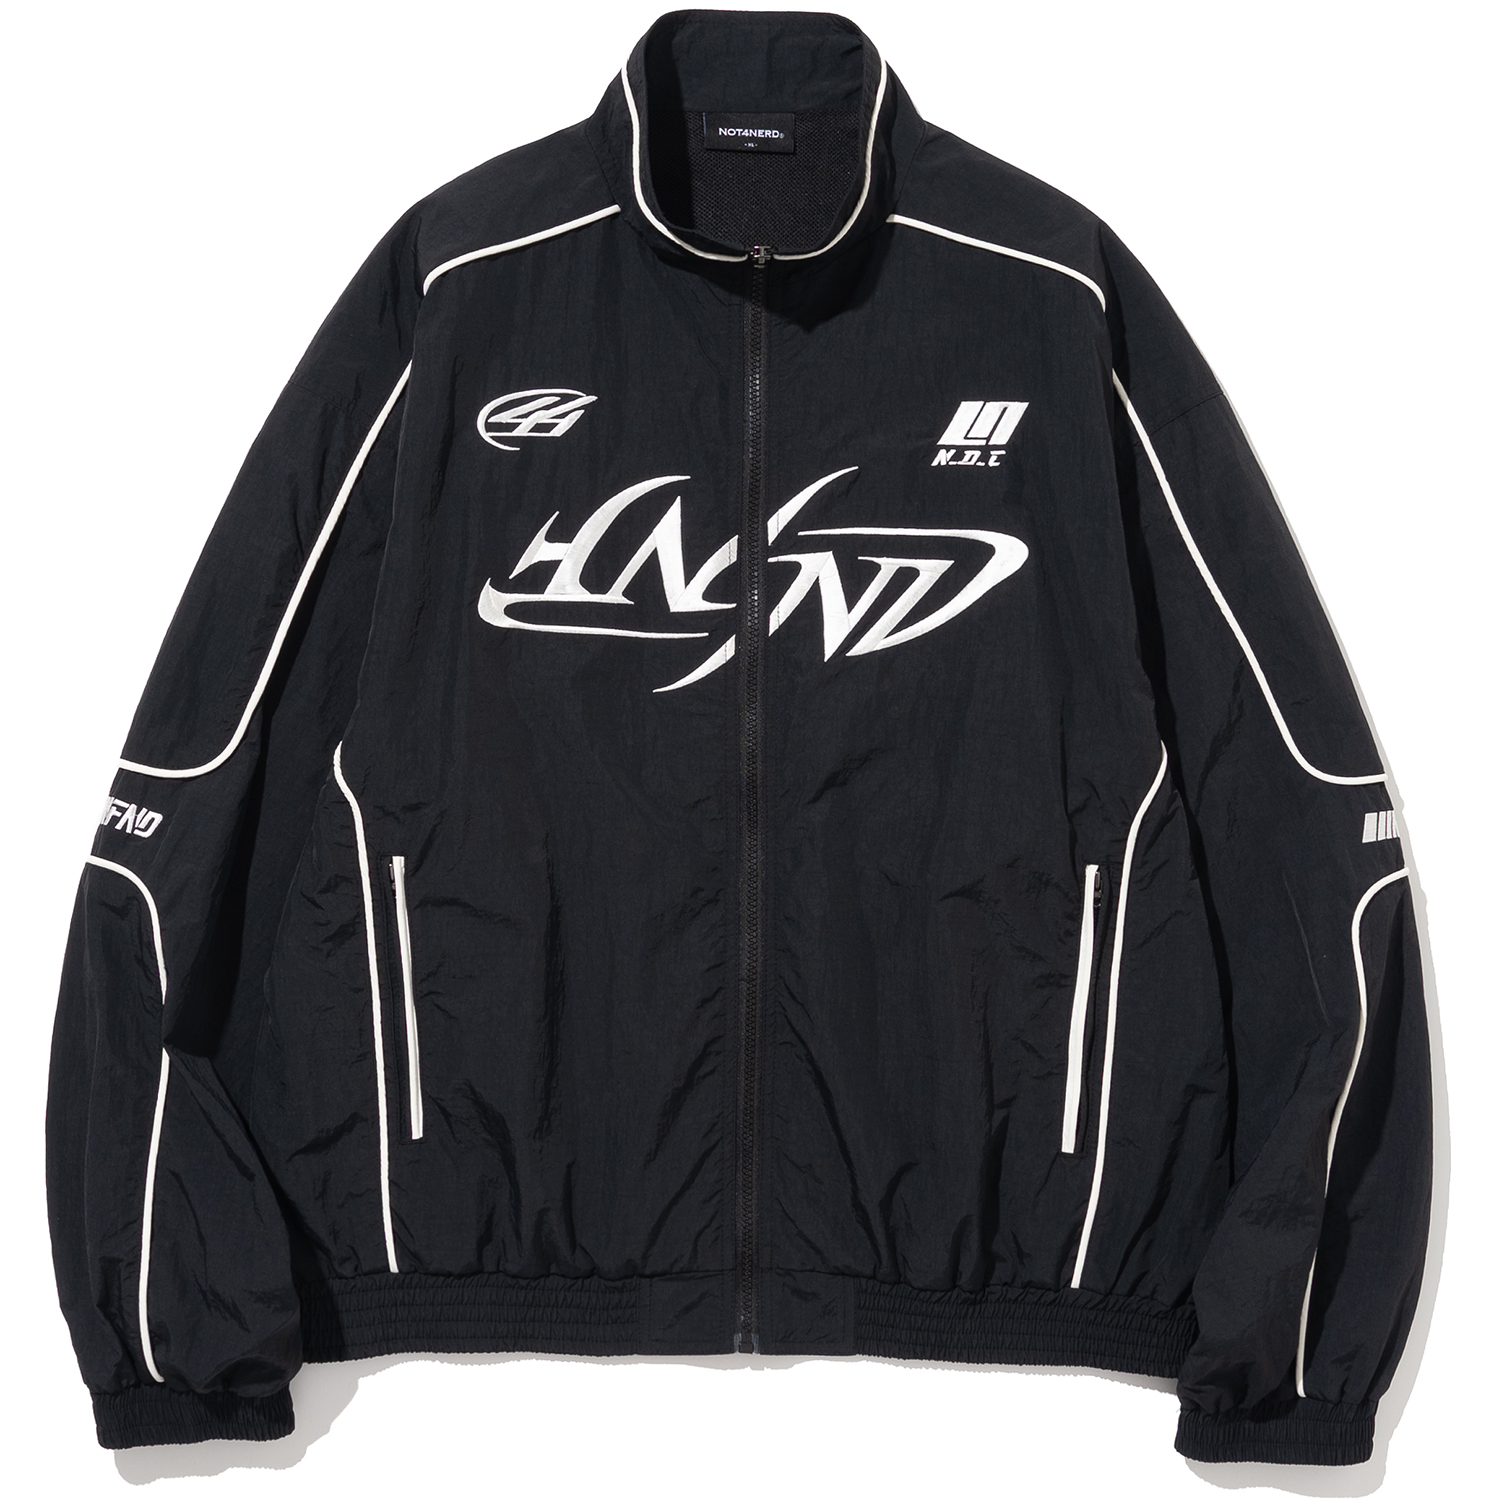 [5월 3일 예약배송] Tribal Logo Nylon Racing Jacket - Black,NOT4NERD